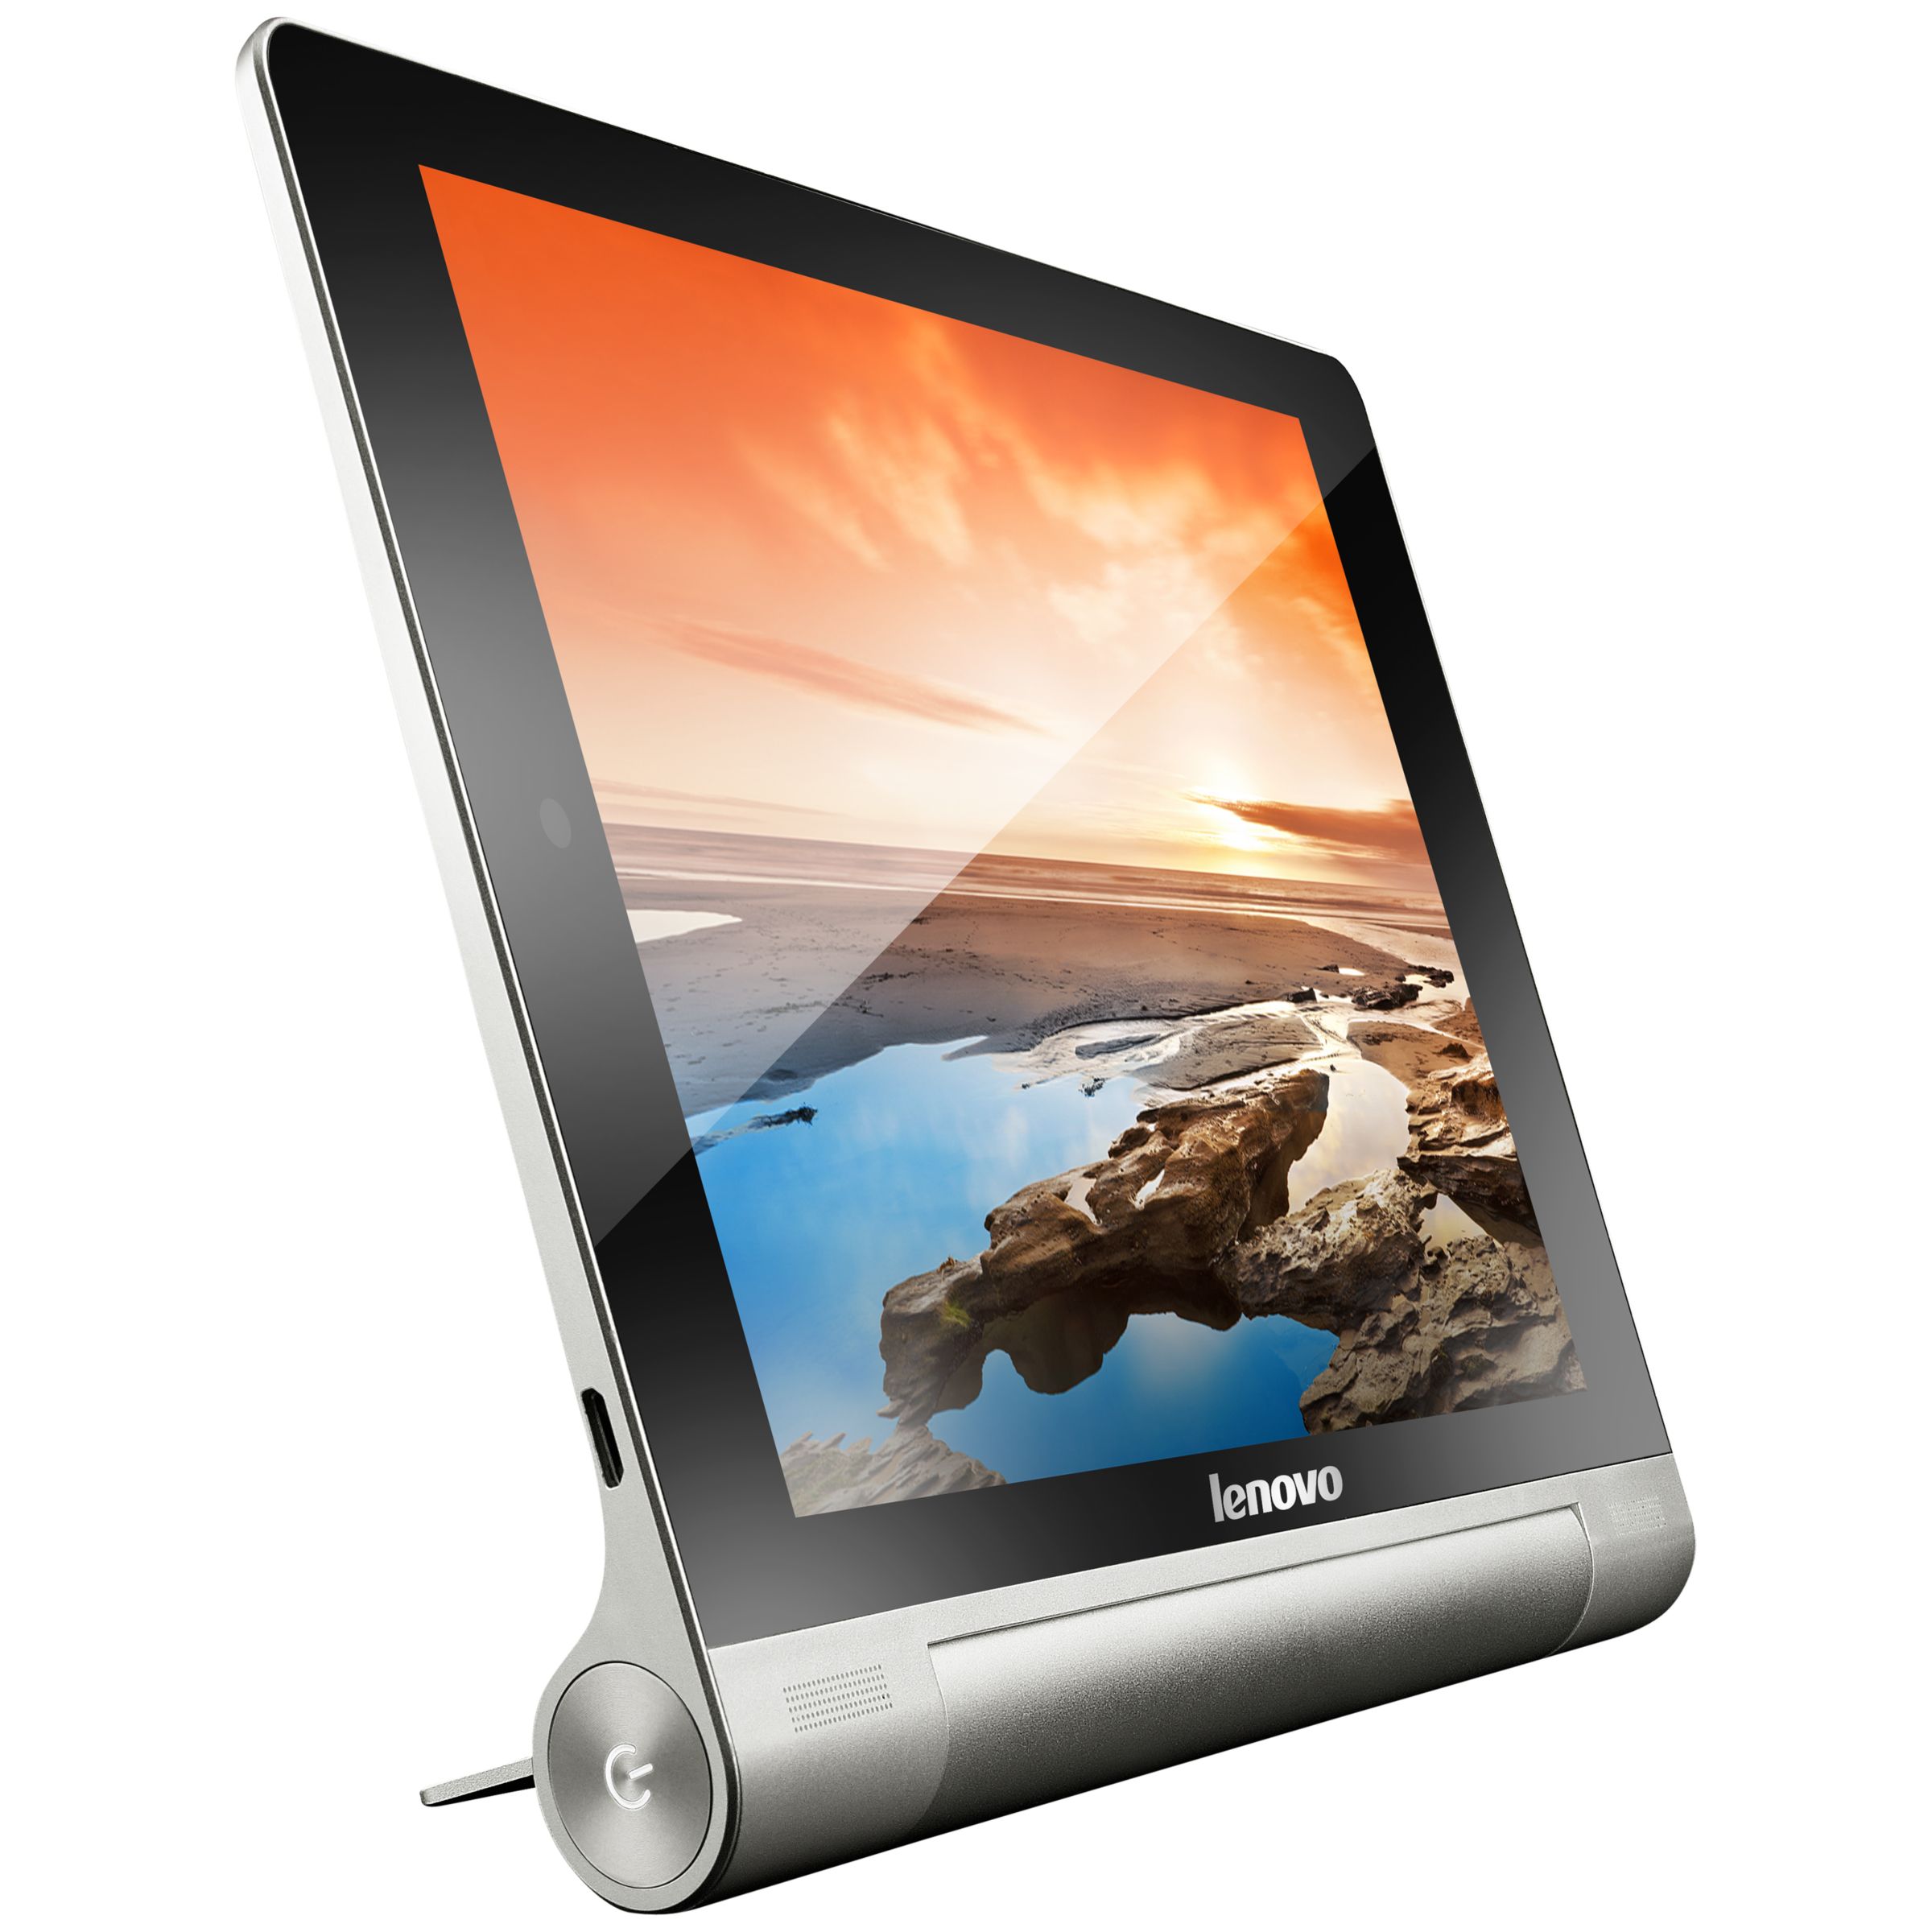 Lenovo Yoga Tablet 10, Quad-core Processor, Android, 10”, Wi-Fi, 16GB, Silver